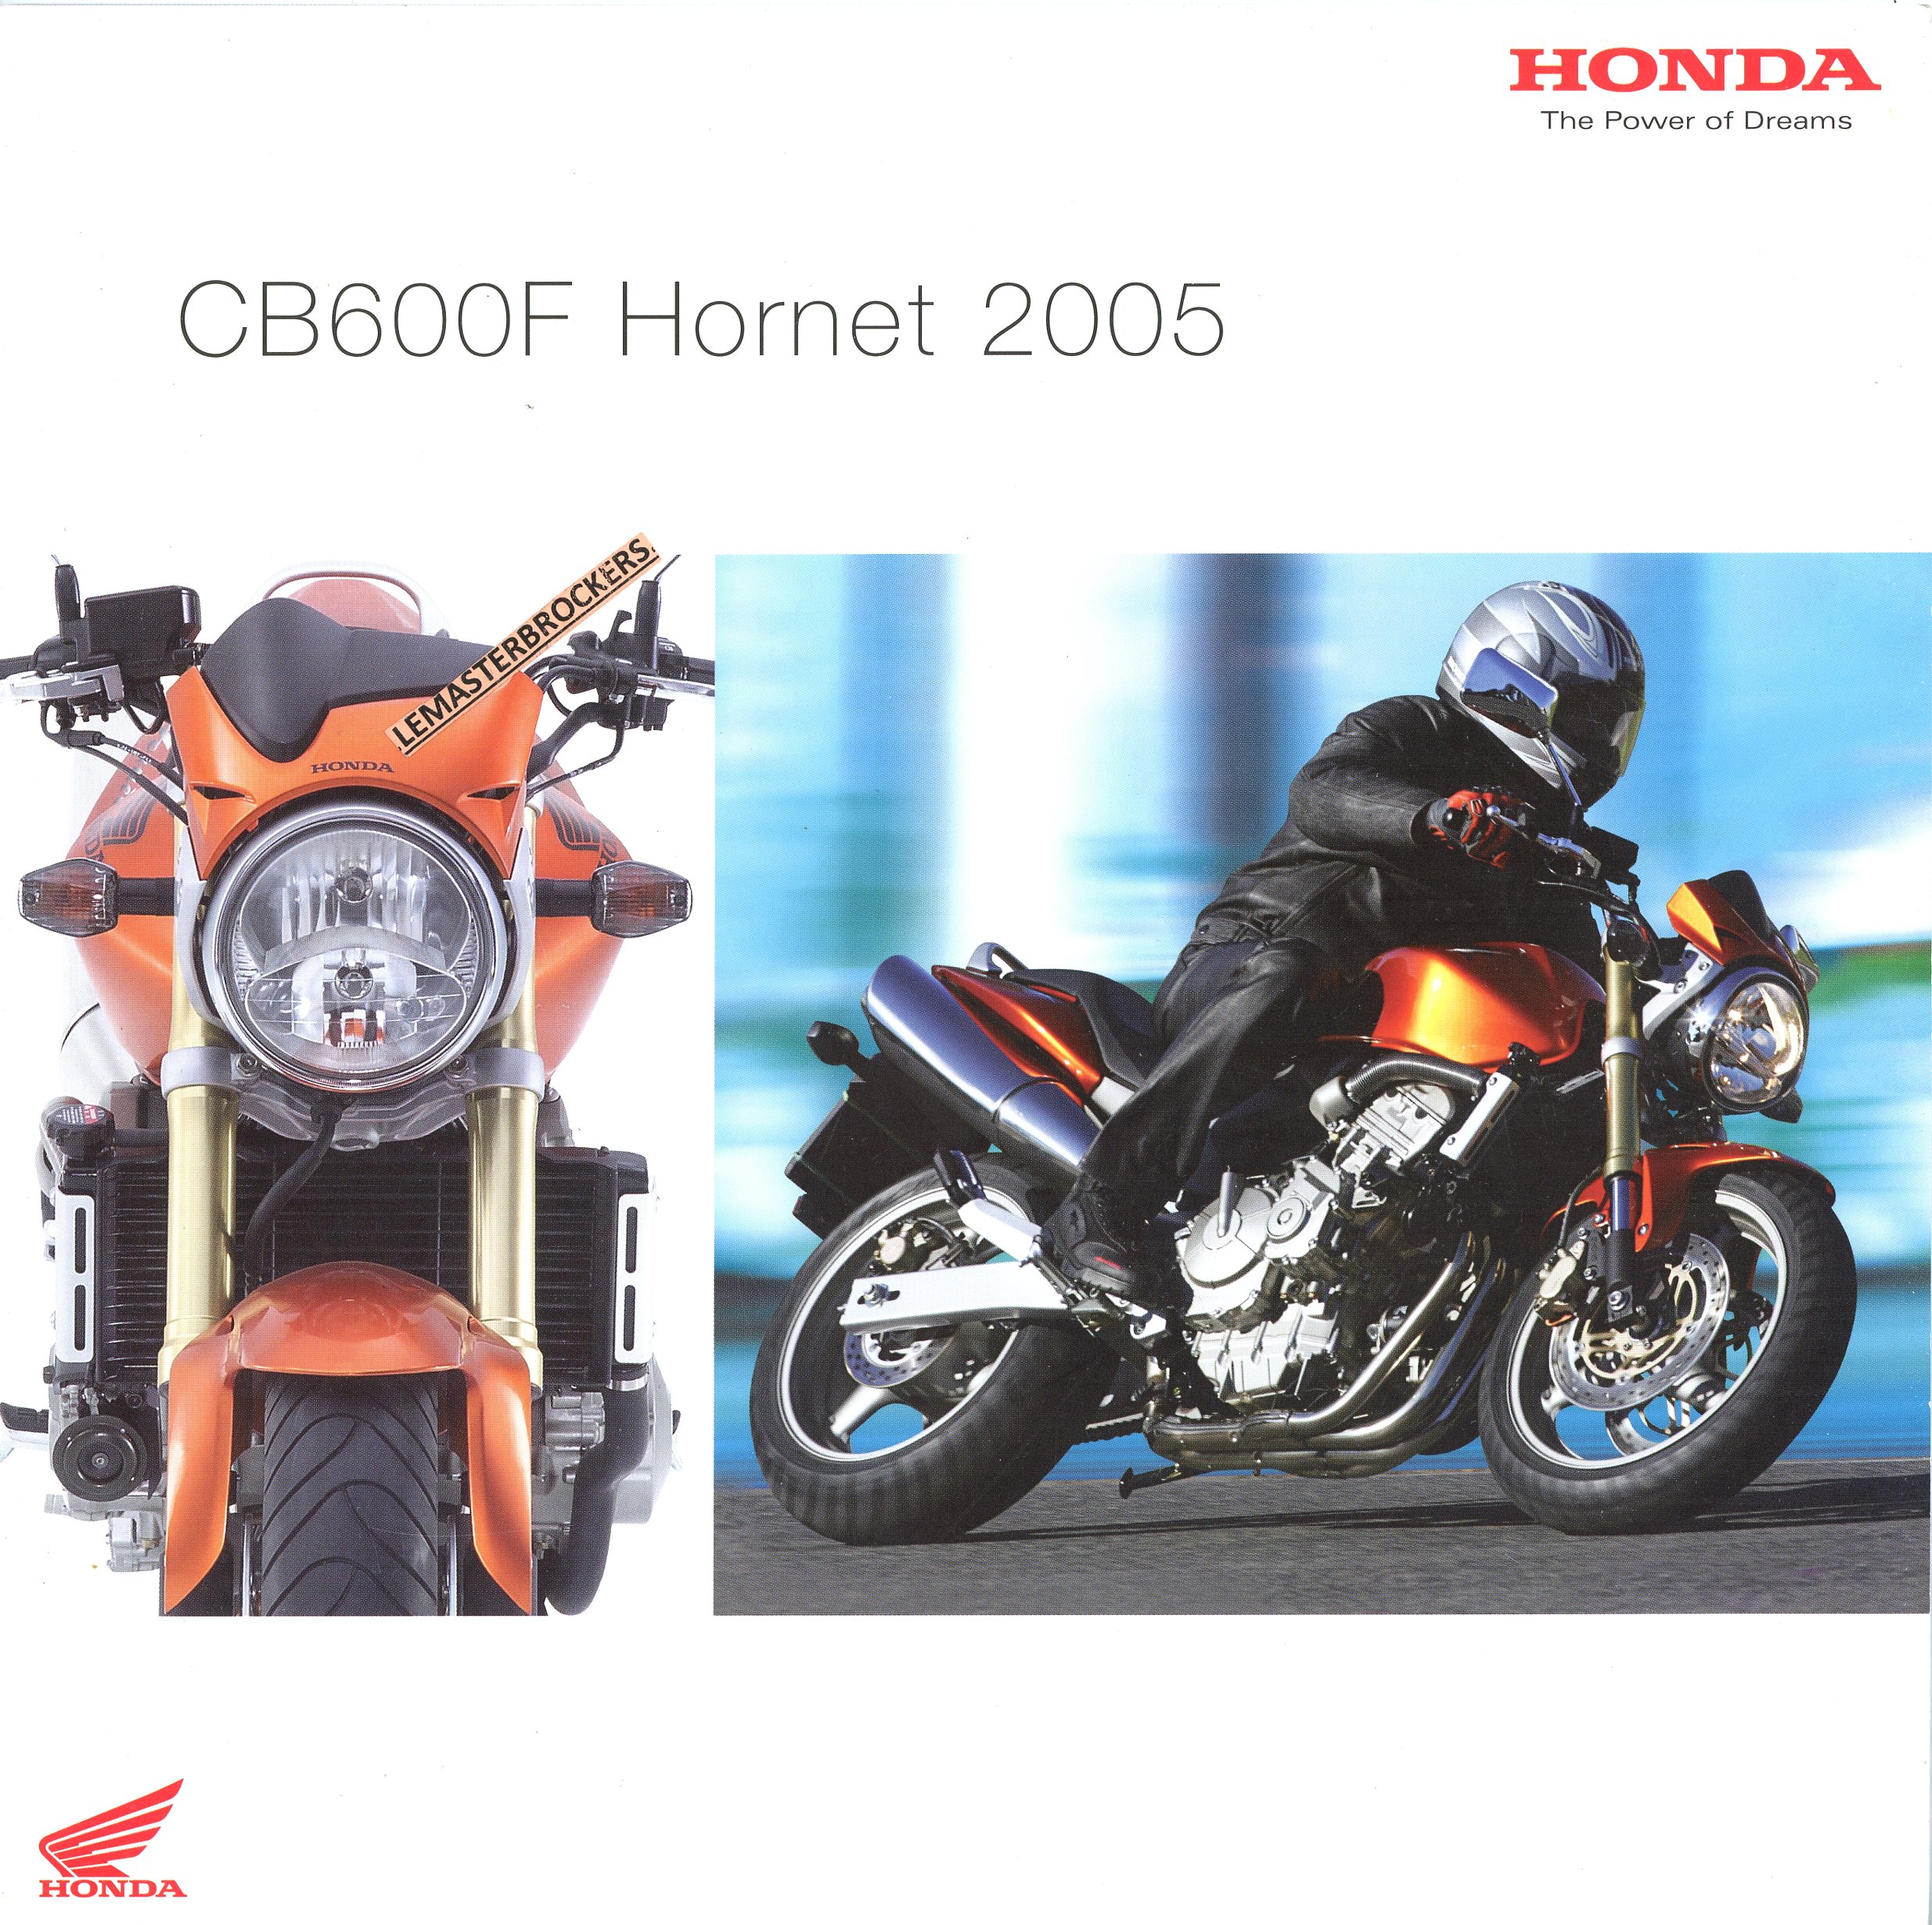 BROCHURE MOTO HONDA CB600F HORNET 2005